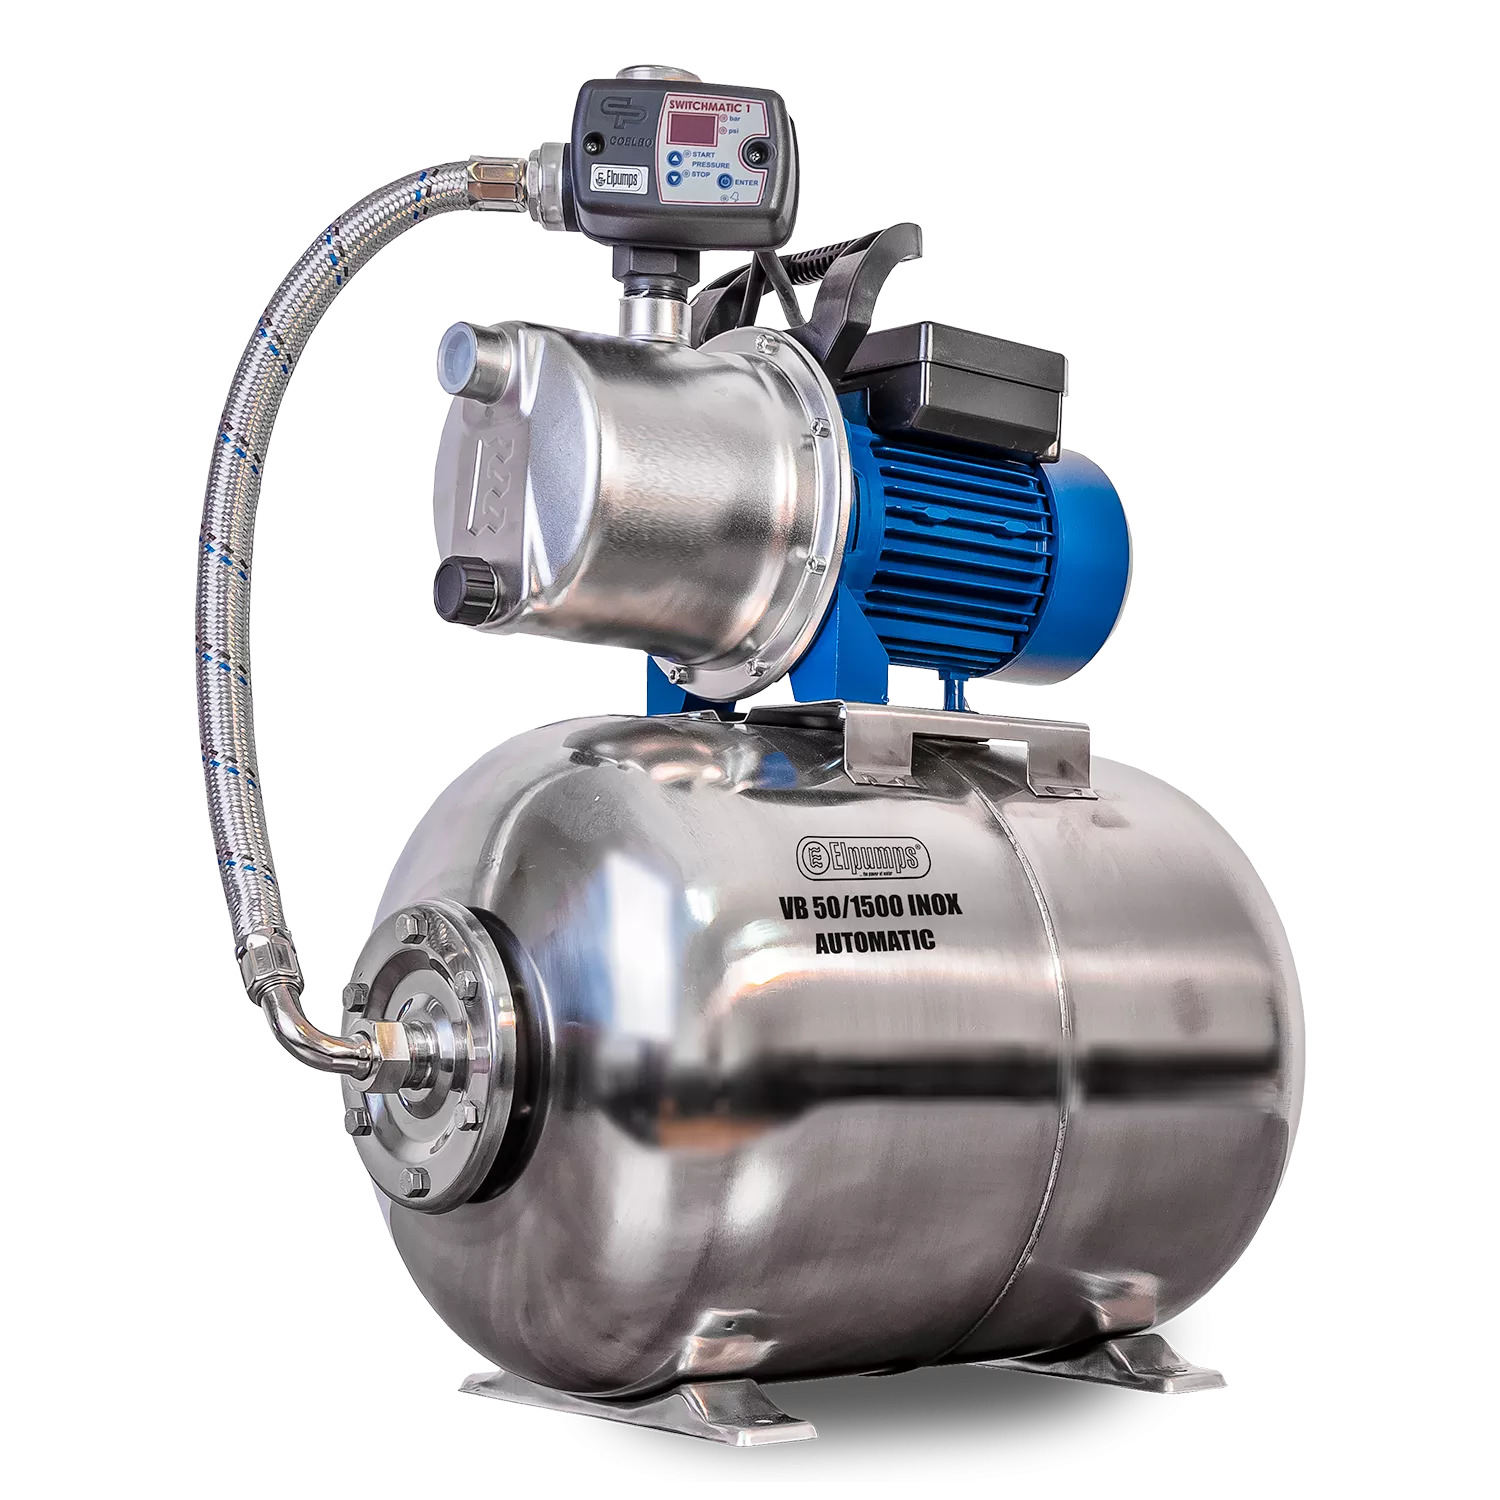 VB 50/1500 INOX Automatic Hauswasserwerk, mit INOX-Pumpenrad, Pumpengehäuse und Druckbehälter, 1500 W, 6.300 l/h, 4,8 bar, 50 L